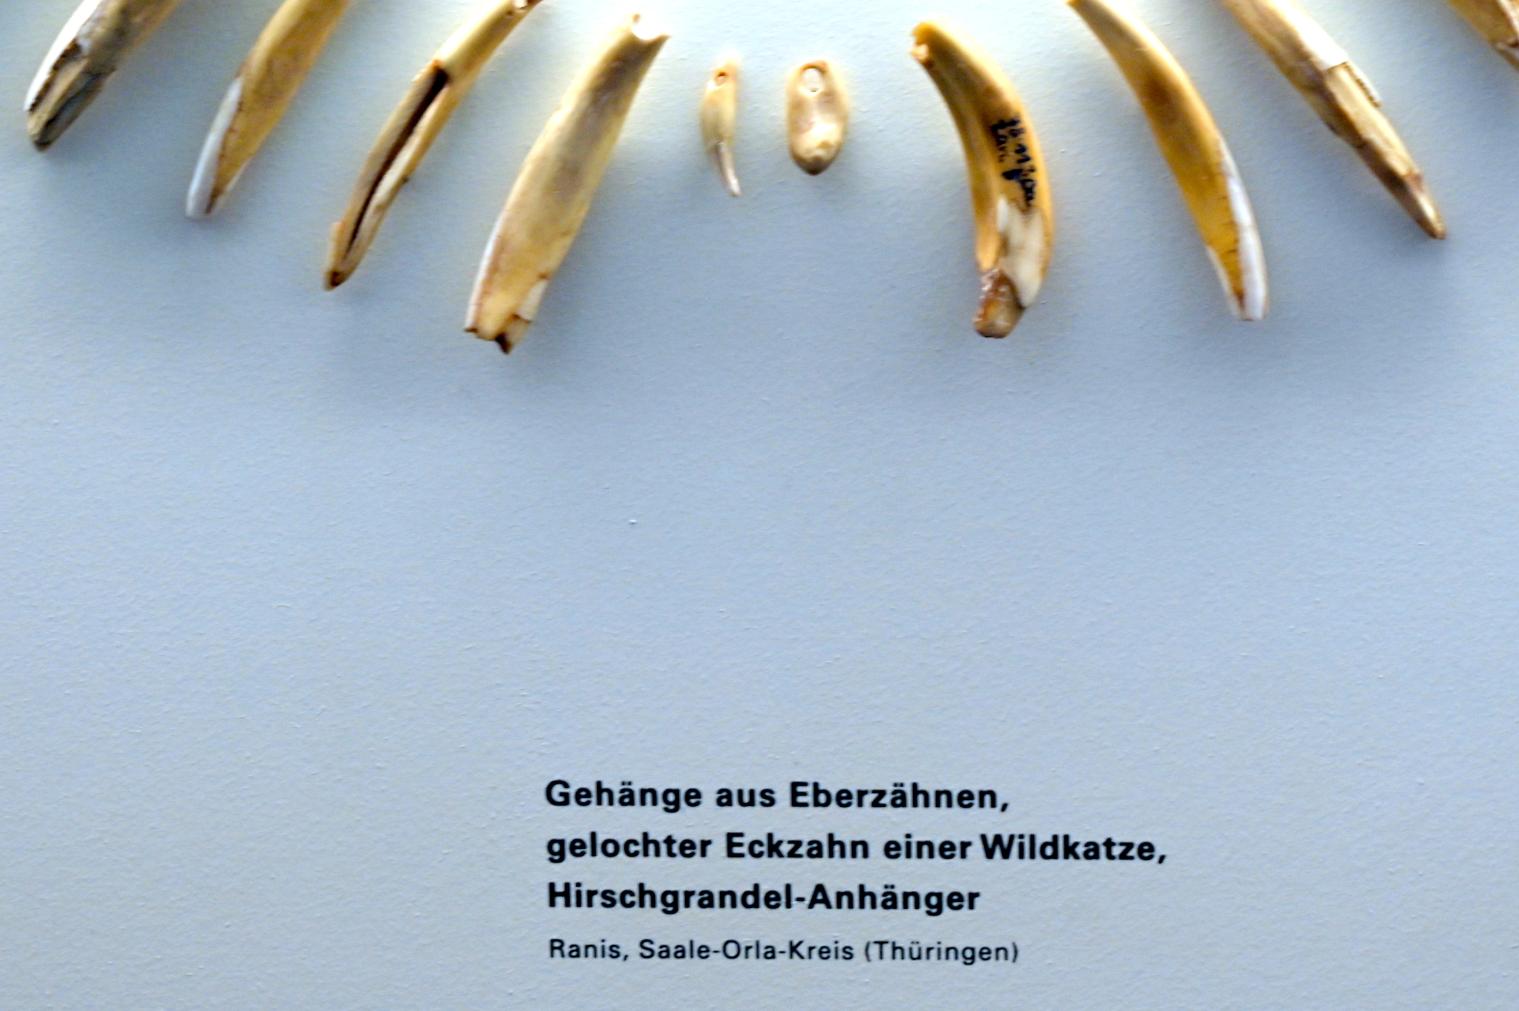 Gelochter Eckzahn einer Wildkatze, Mesolithikum, 9500 - 5500 v. Chr.